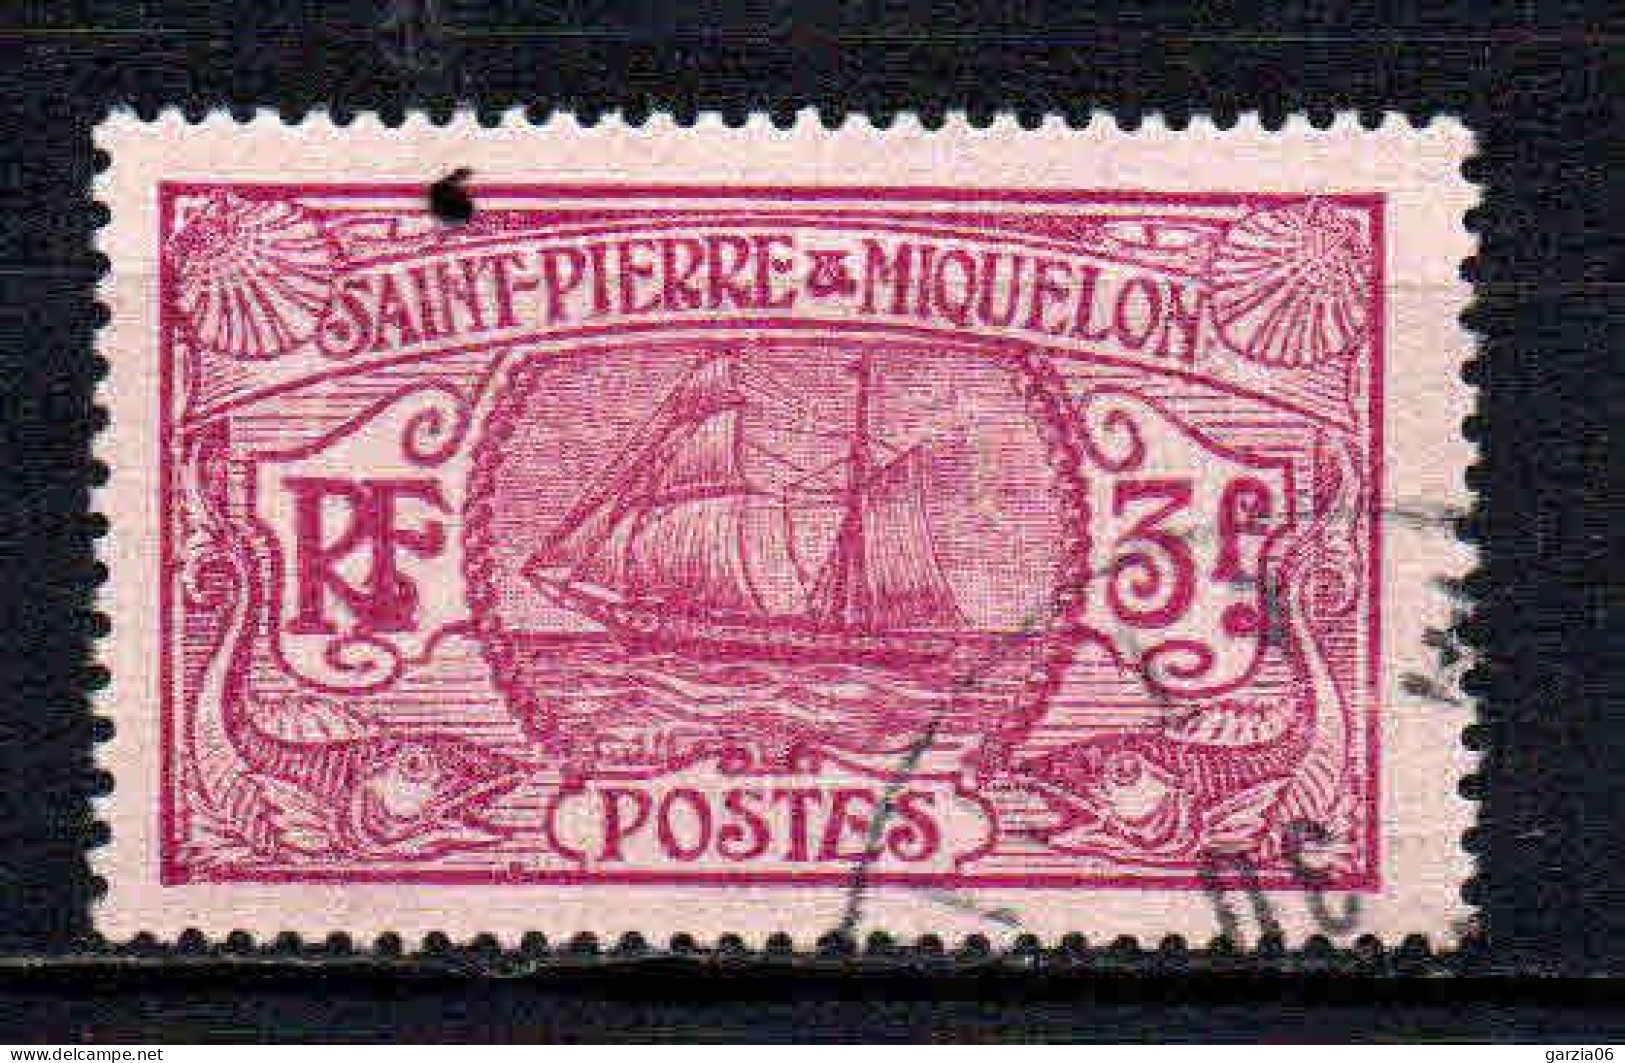 St Pierre Et Miquelon    - 1930 - Bateau De Pêche   - N° 131  - Oblit - Used - Usados